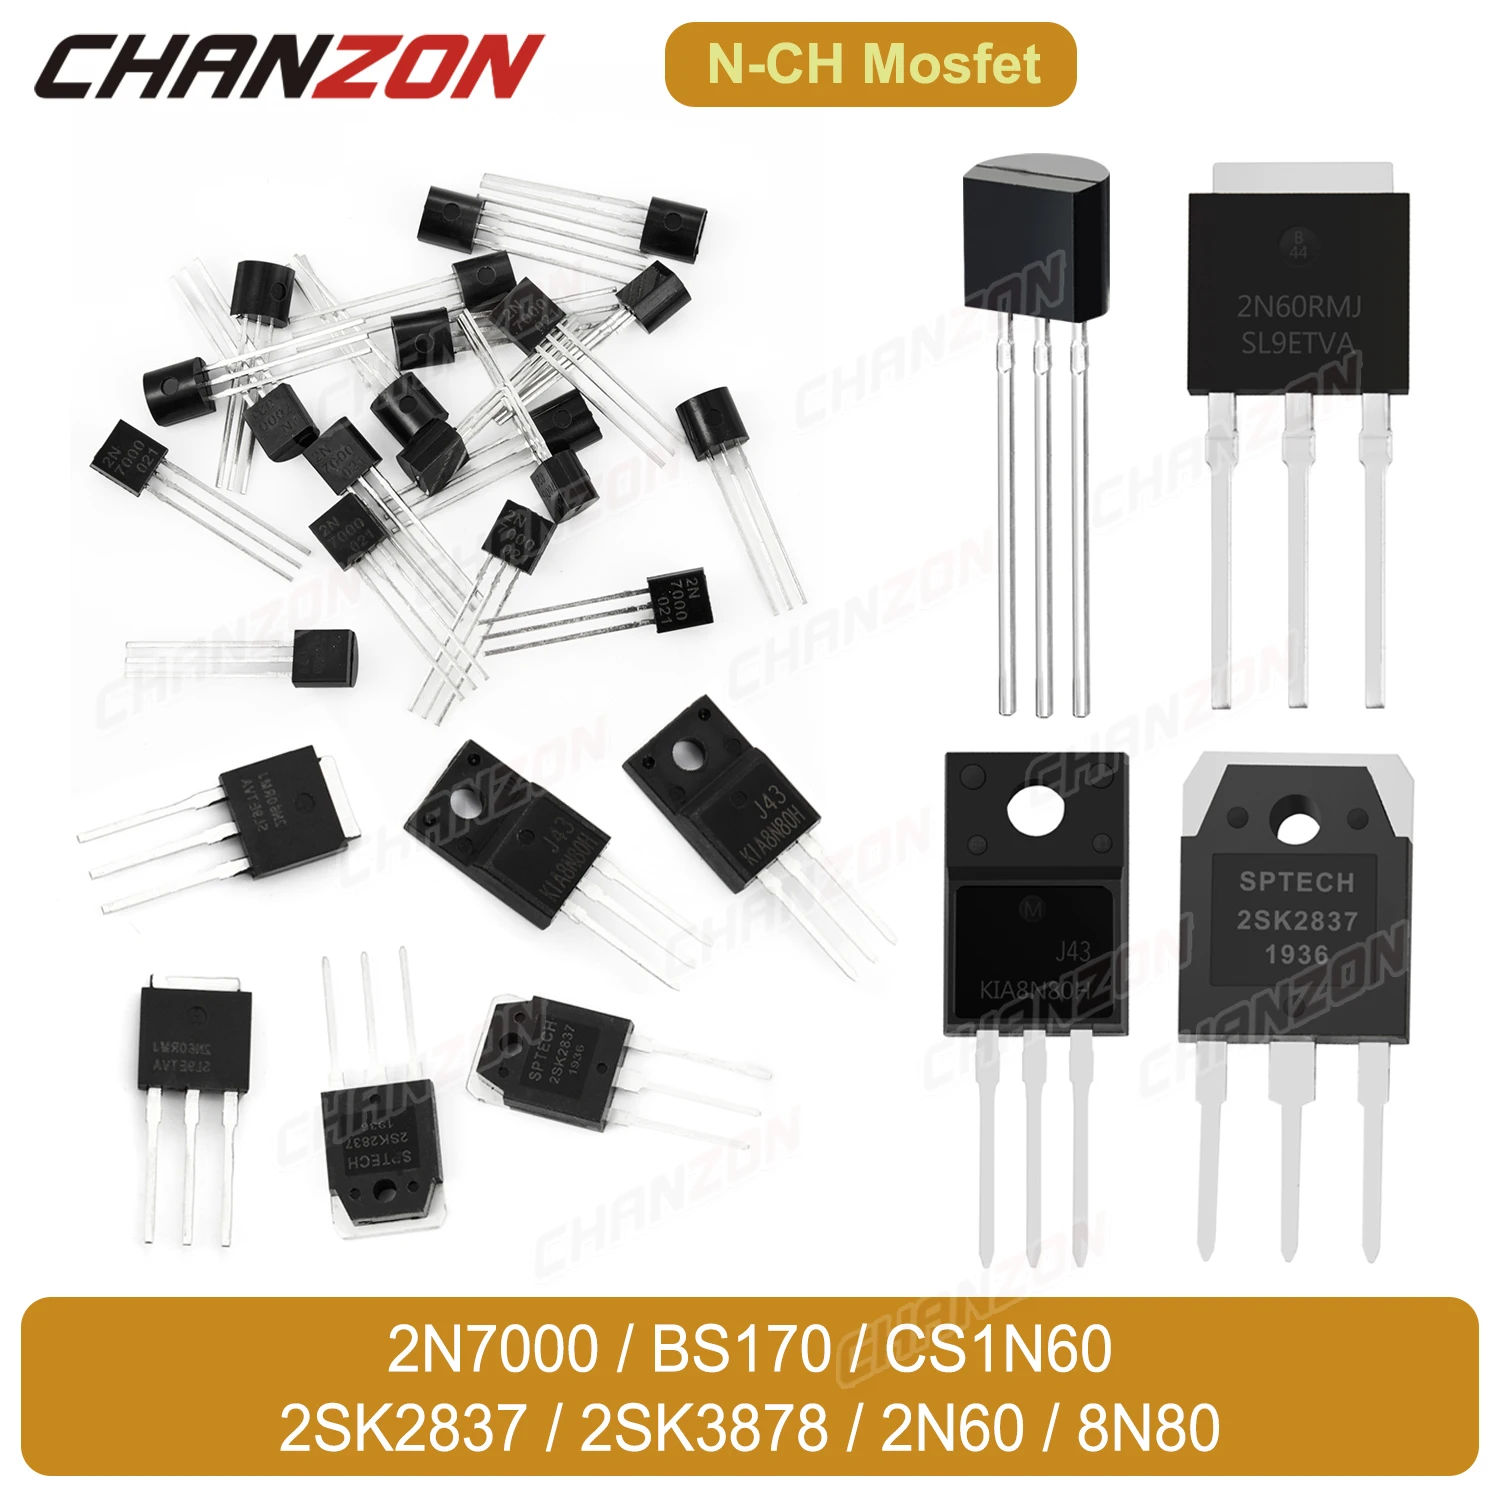 

10PCS/Lots Original N Channel Mosfet Transistor 2N7000 BS170 CS1N60 2SK2837 2SK3878 2N60 8N80 TO-92 TO-3P TO-251 TO-220F